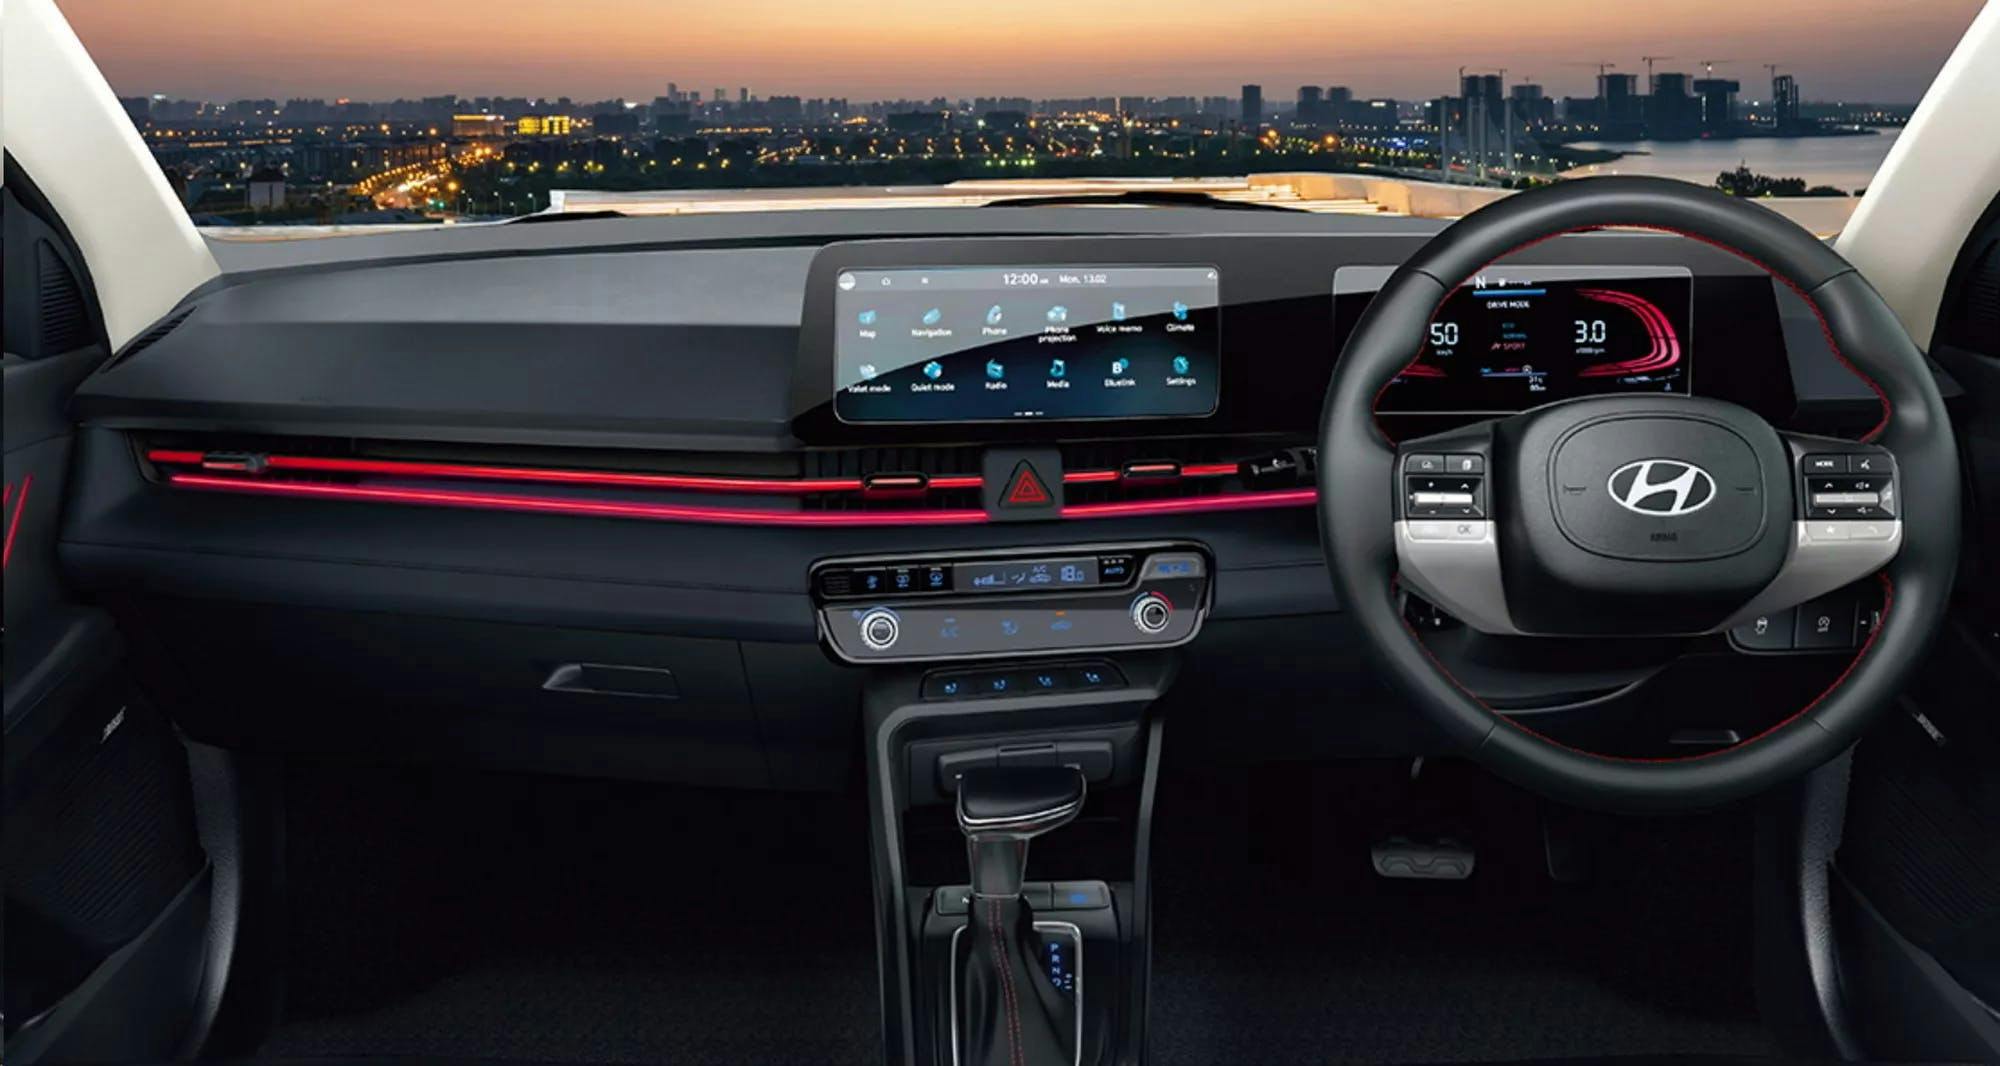 Hyundai Accent interior